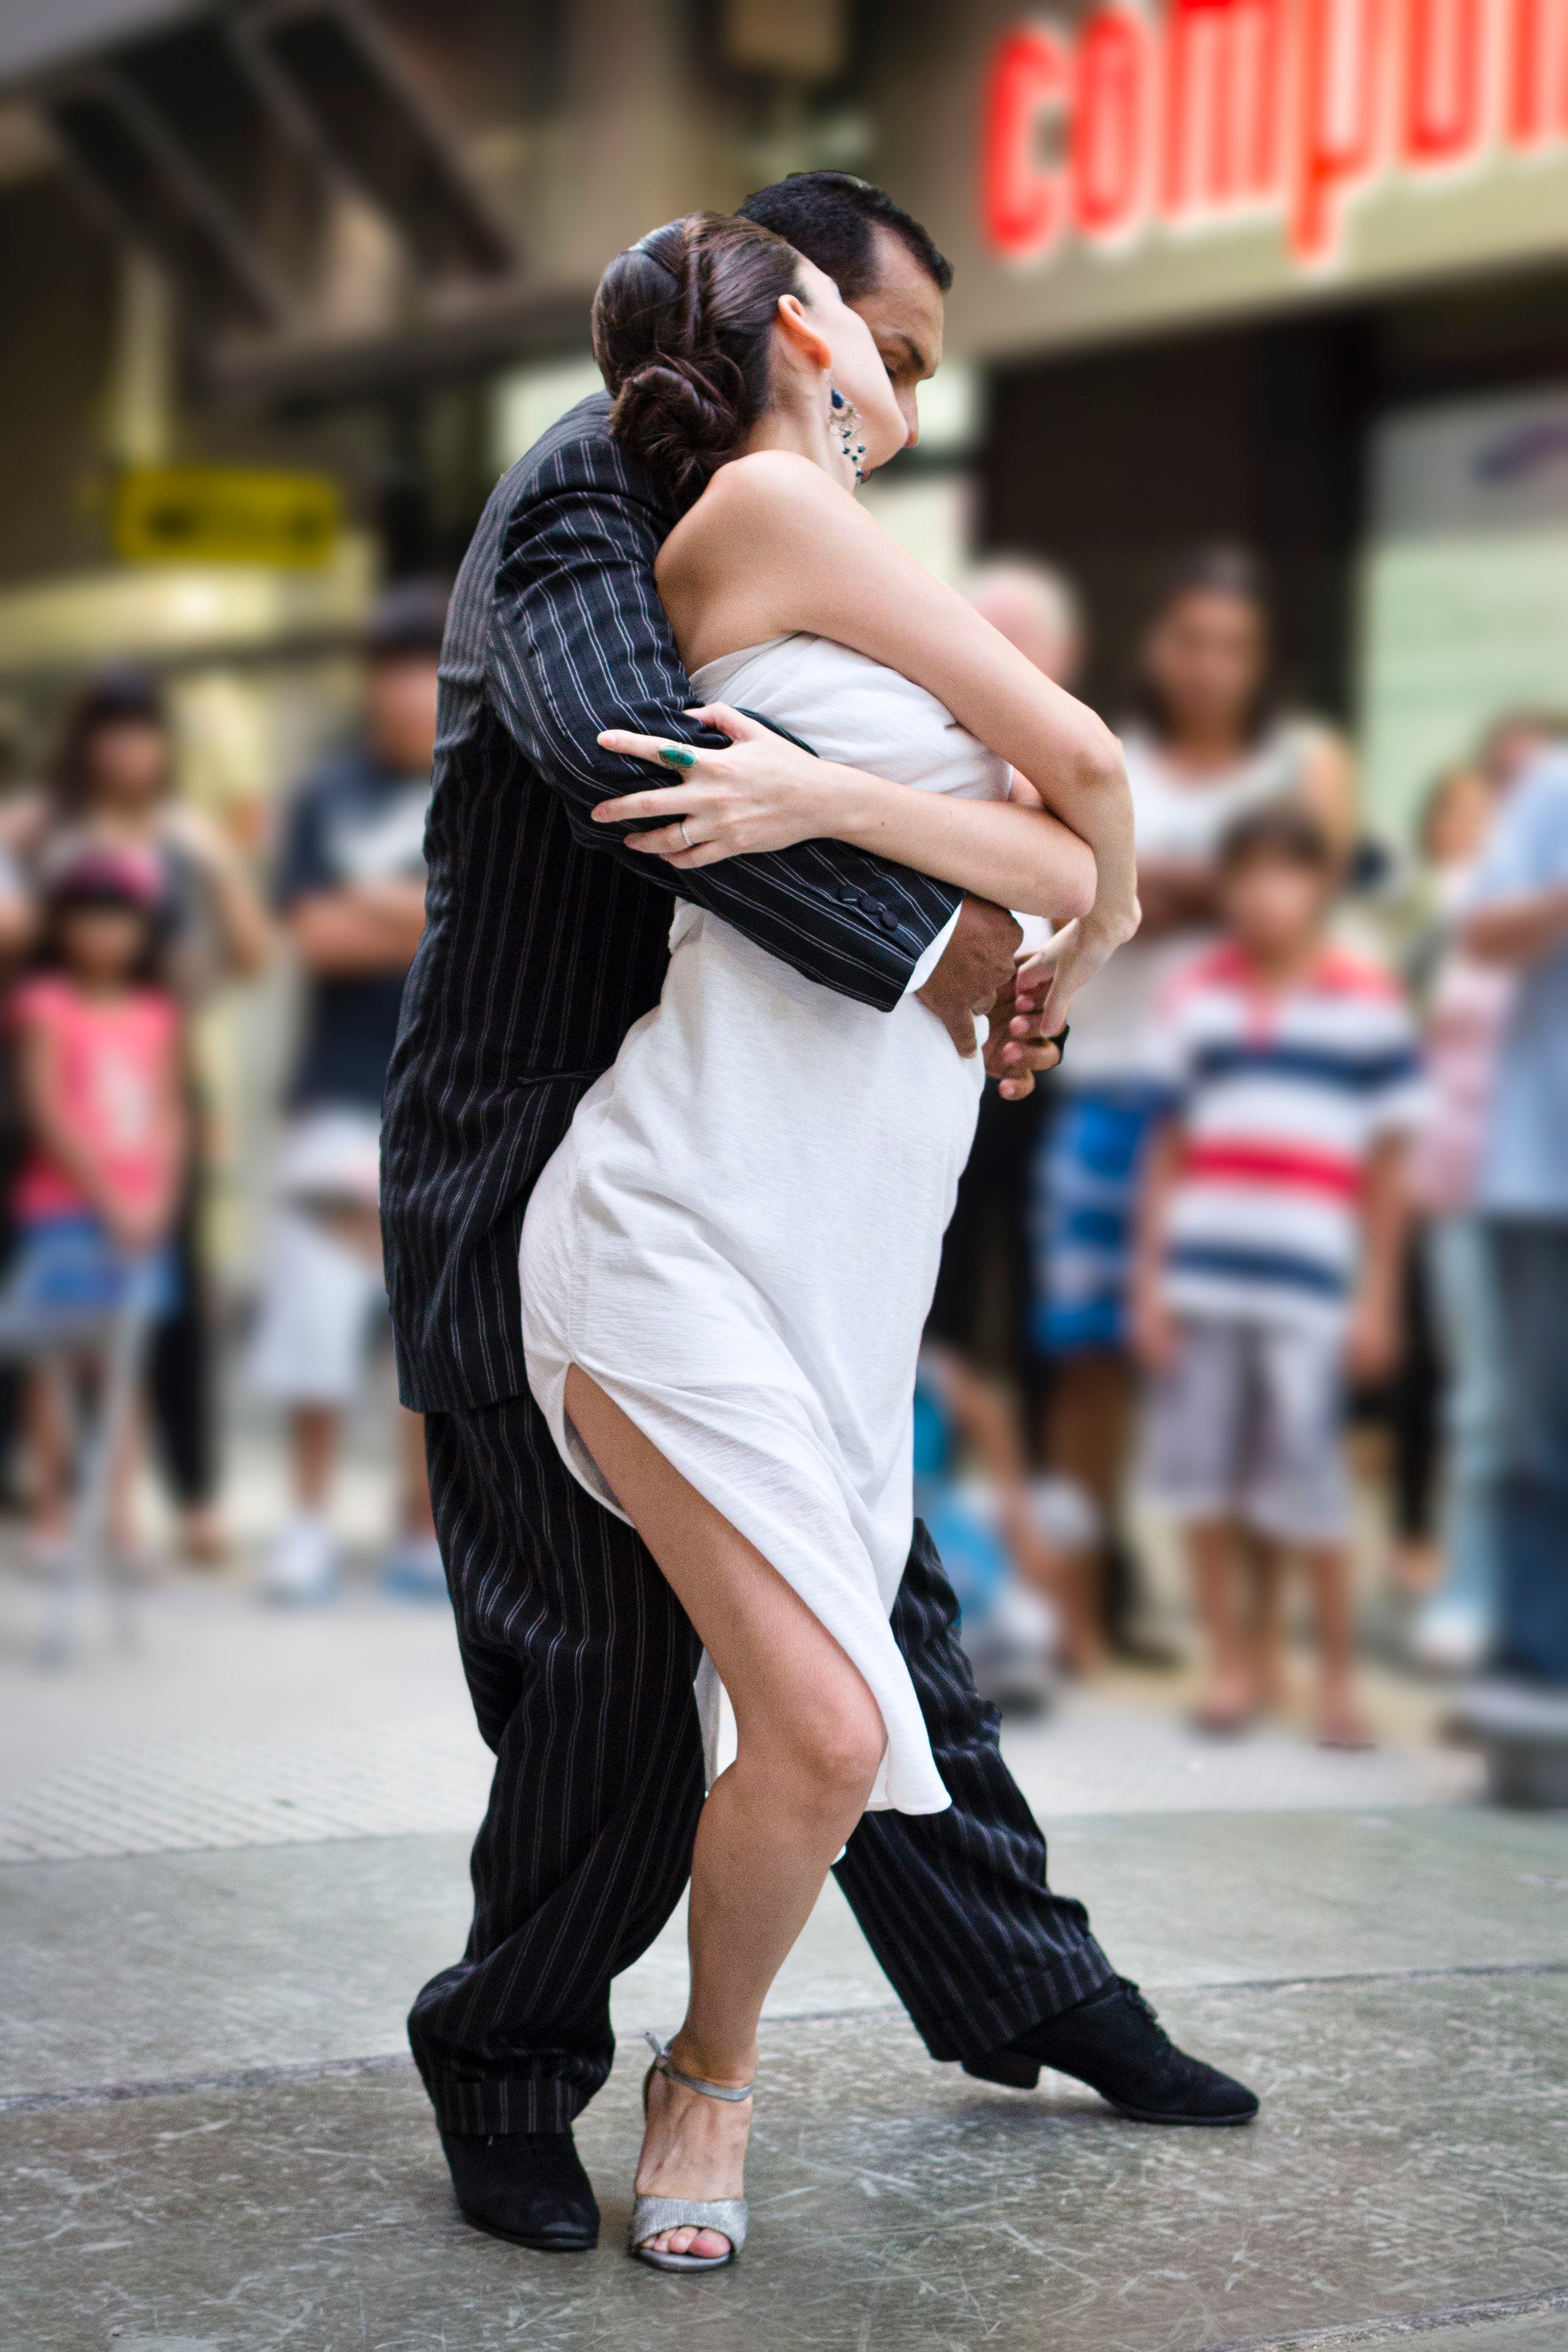 A couple dancing. | Source: Unsplash